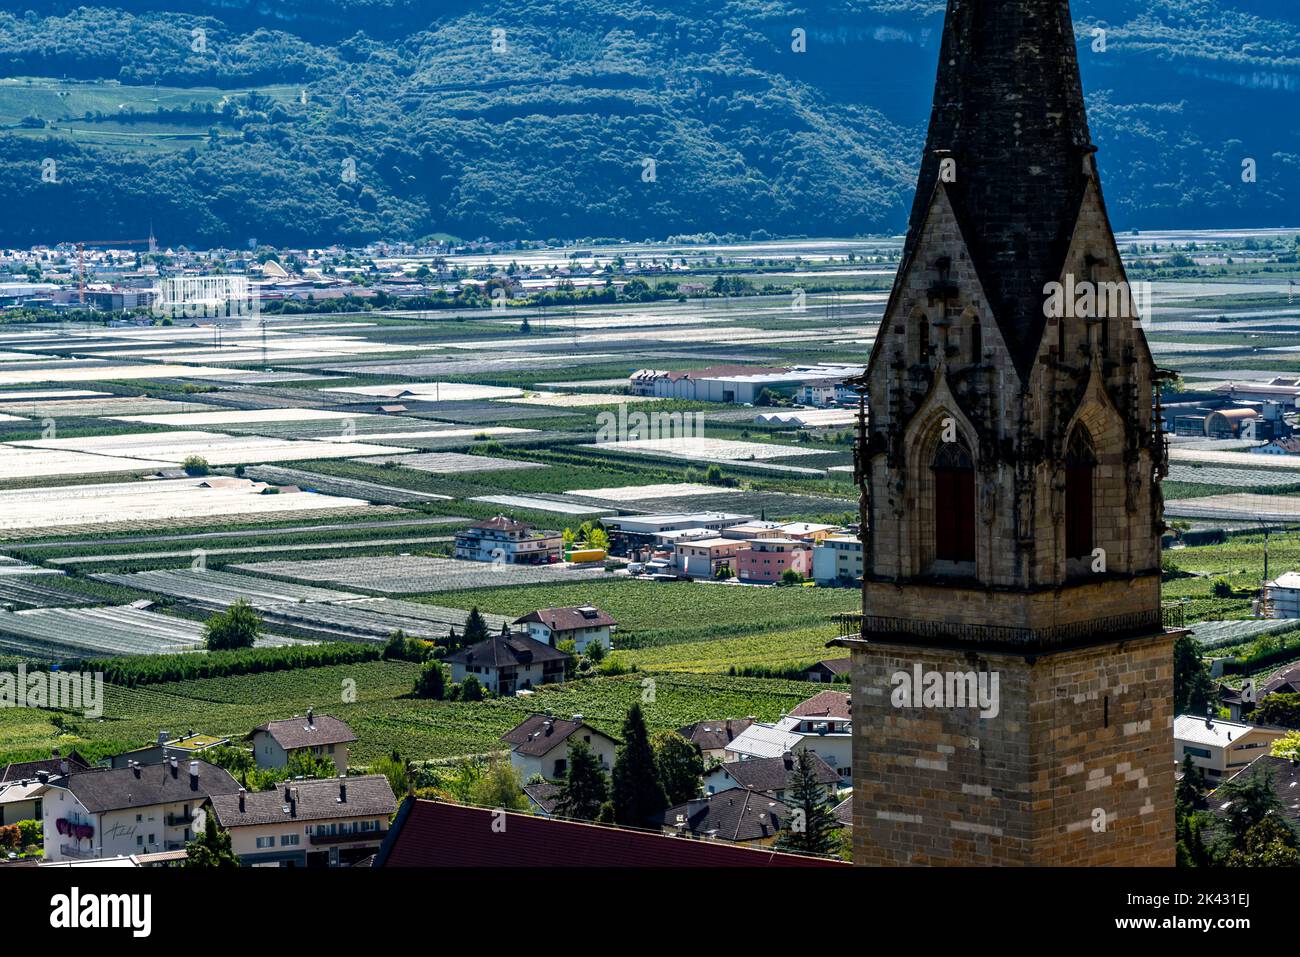 Apfelanbaugebiet und Weinanbau, im Etschtal, Südtirol, große Anbauflächen, in Südtirol über 18.400 Hektar, bewirtschaftet Stockfoto